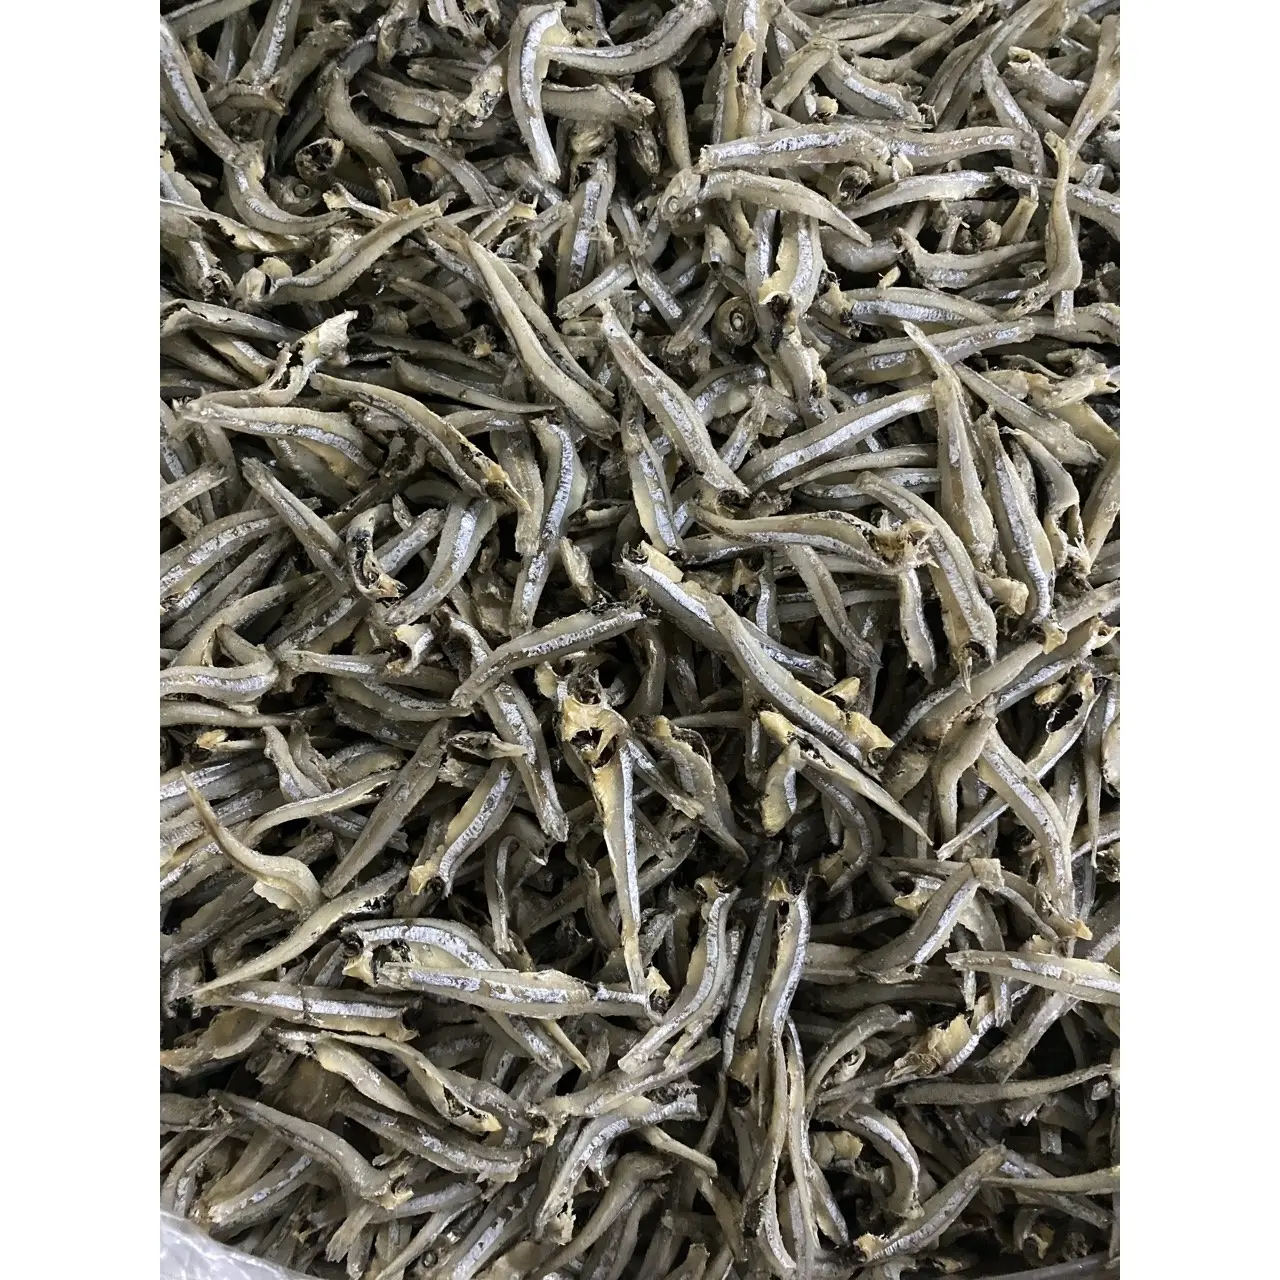 Production professionnelle de corps entier en vrac Vietnam poisson d'anchois séché exportateur usine petit poisson séché avec 24 mois de durée de conservation